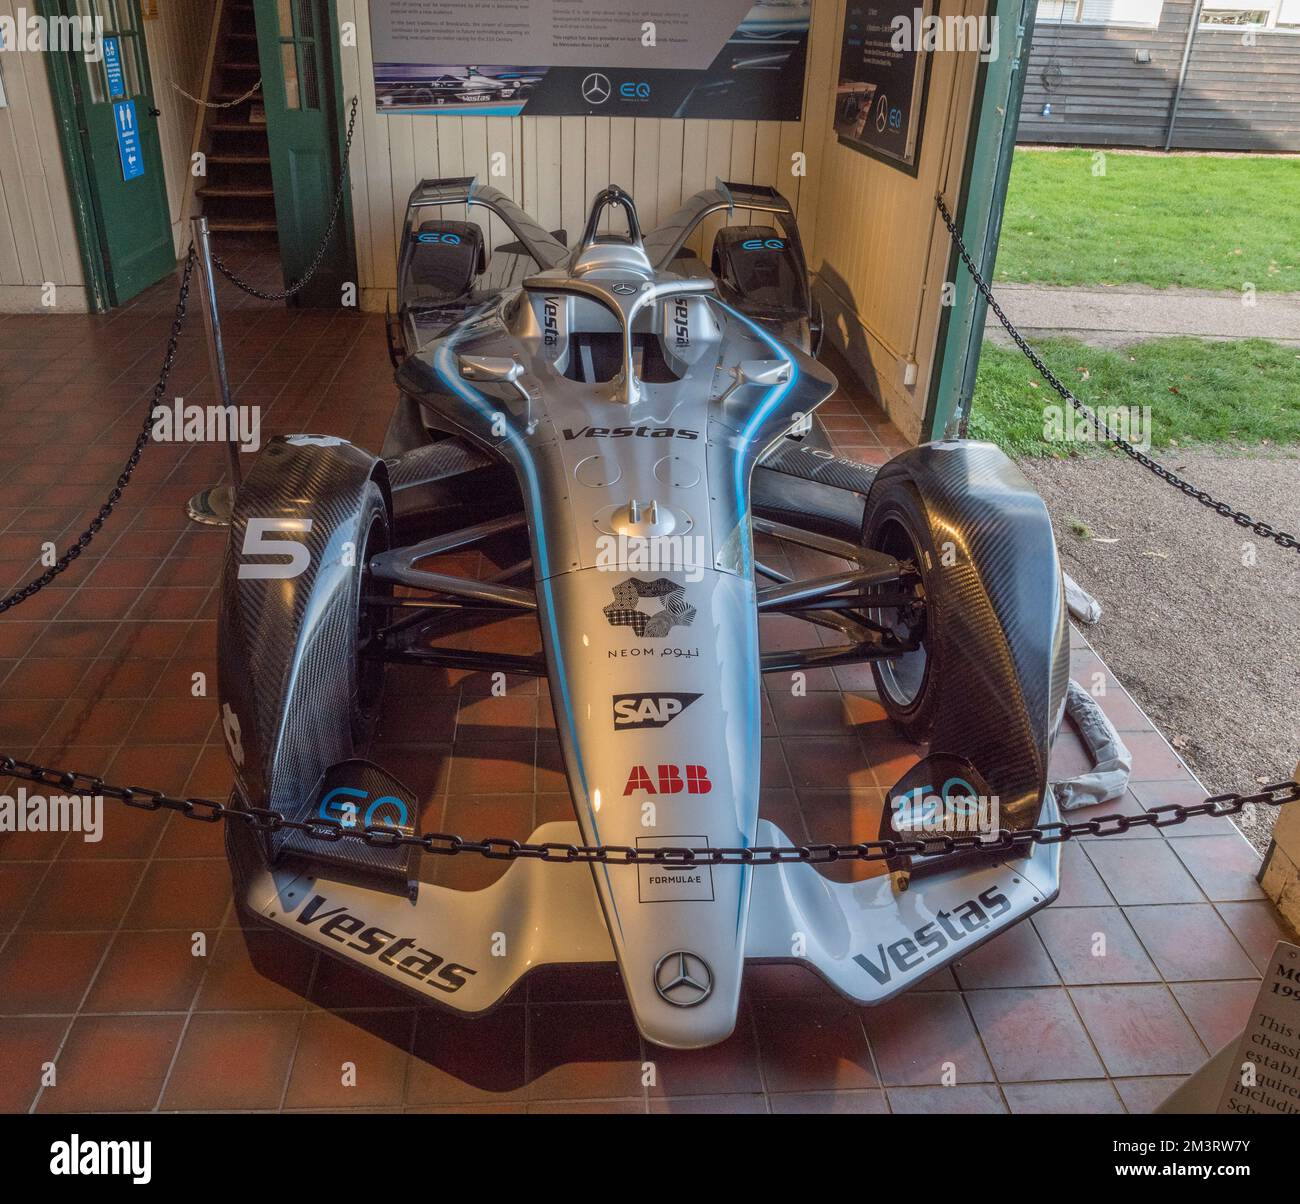 Une réplique de la Mercedes-Benz EQ Silver Arrow 01 Formule E (électrique) dans le Grand Prix Exhibition, Brooklands Museum, Surrey, Royaume-Uni. Banque D'Images